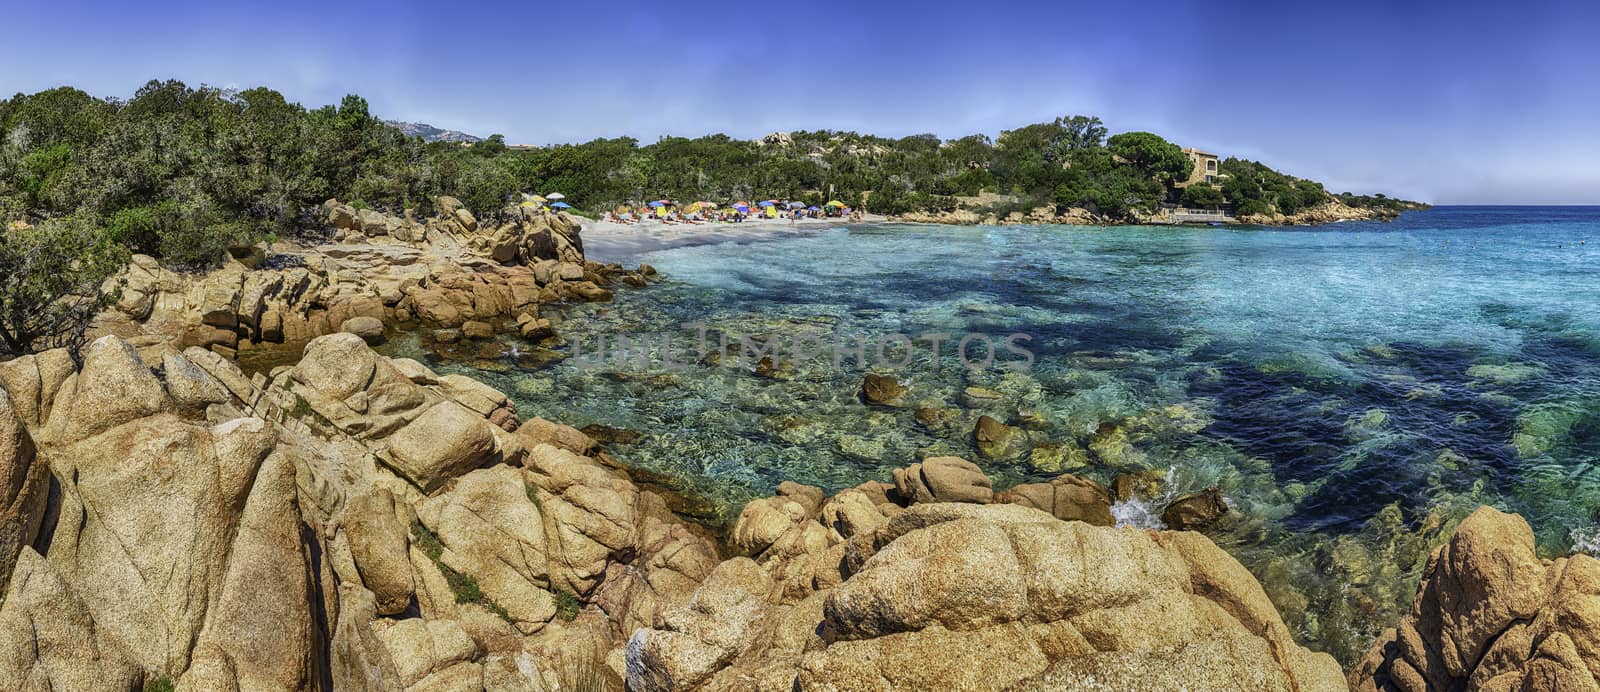 The scenic Capriccioli beach in Costa Smeralda, Sardinia, Italy by marcorubino